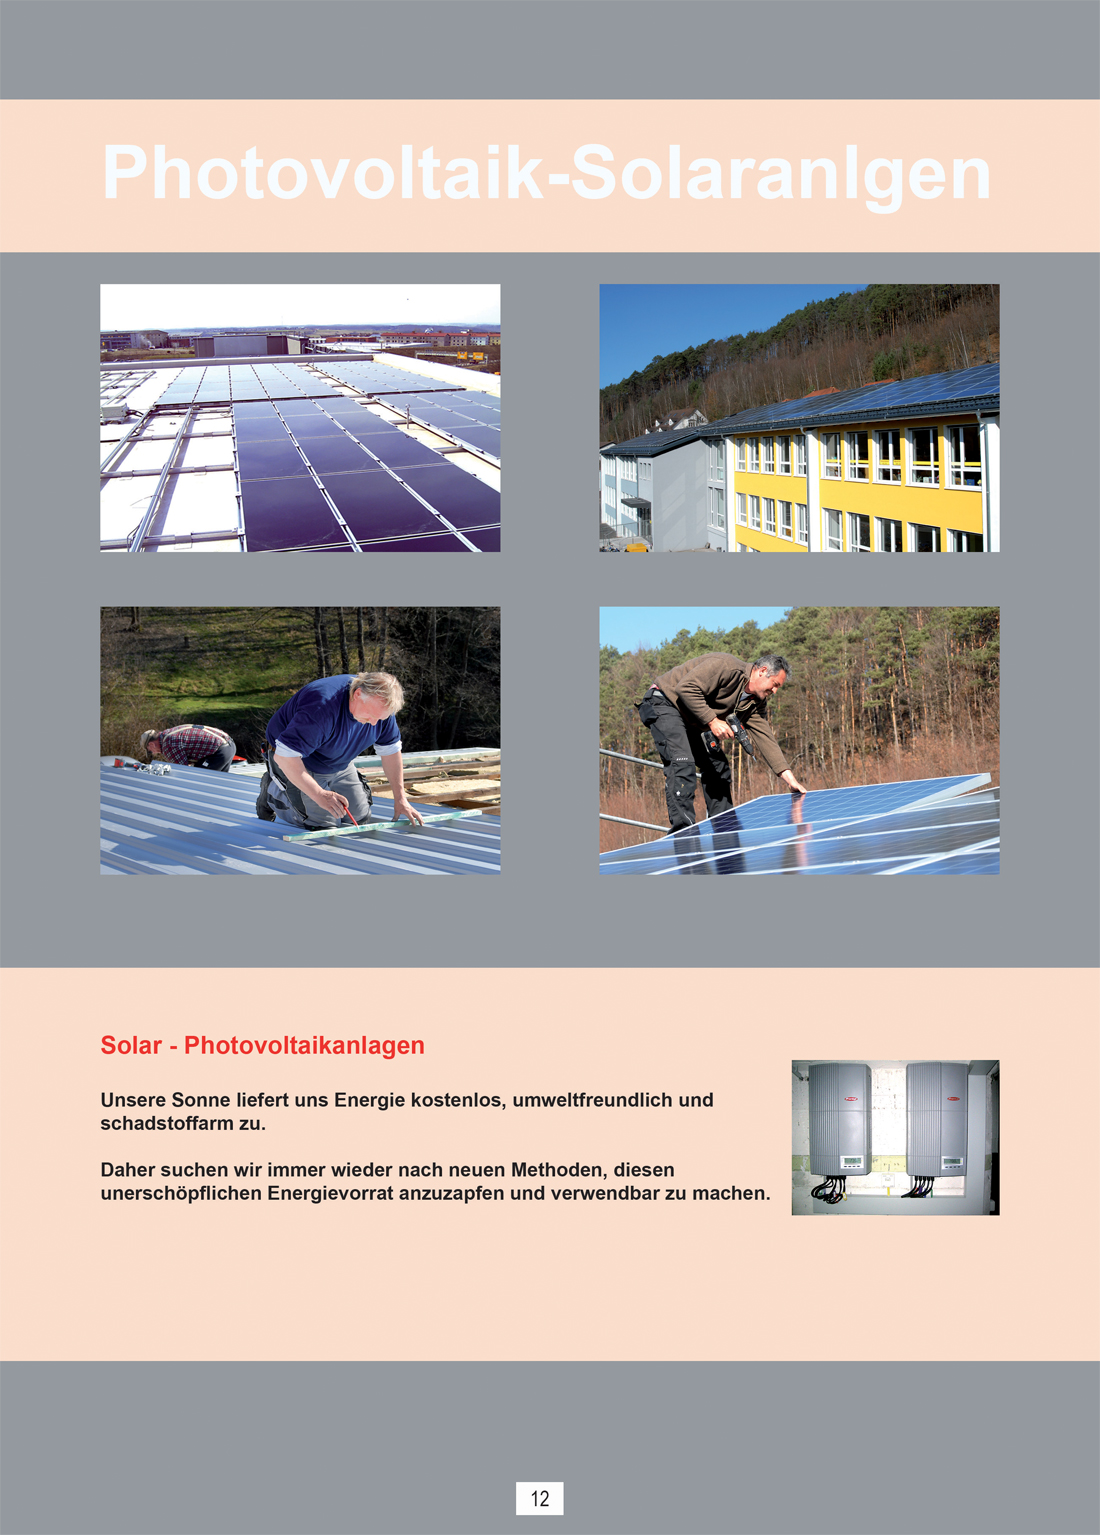 photovoltaik neu